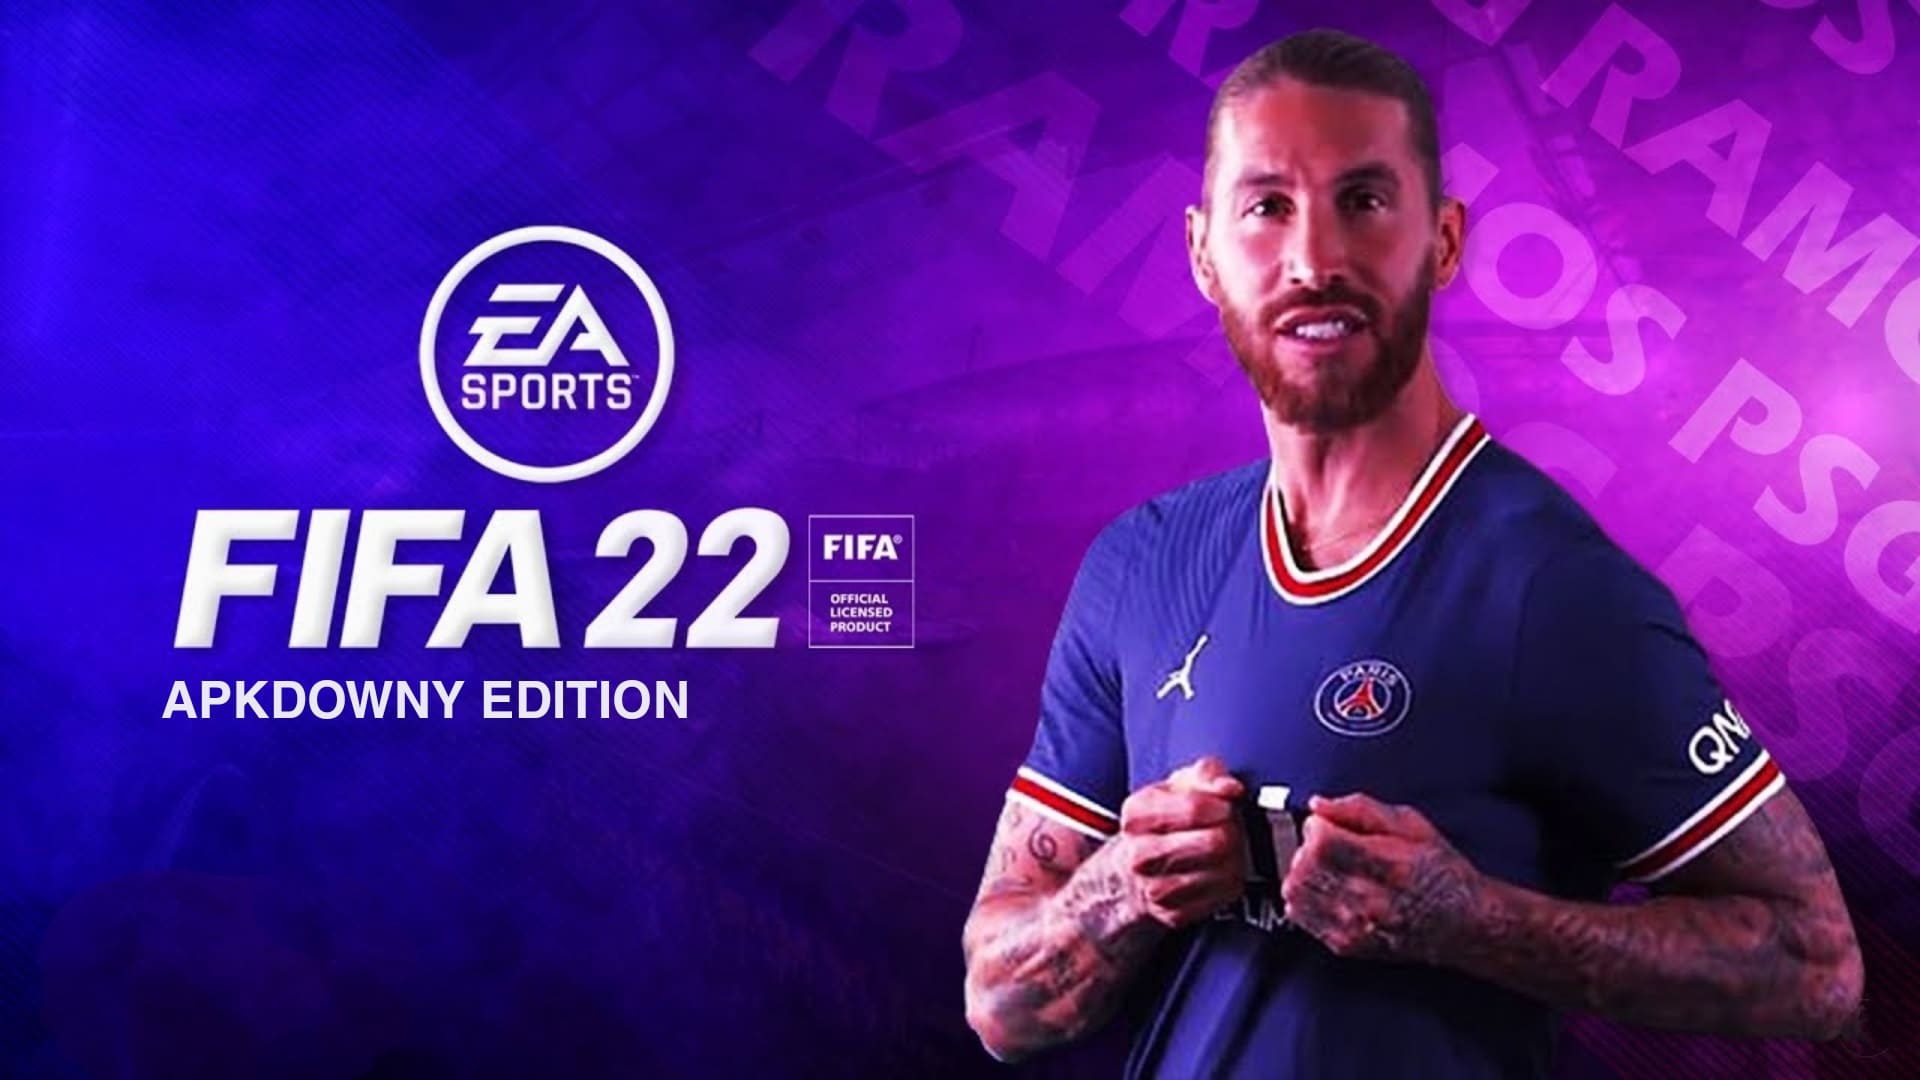 لعبة فيفا 2022 للاندرويد و الكمبيوتر FIFA 22 Mobile Android الرسمية